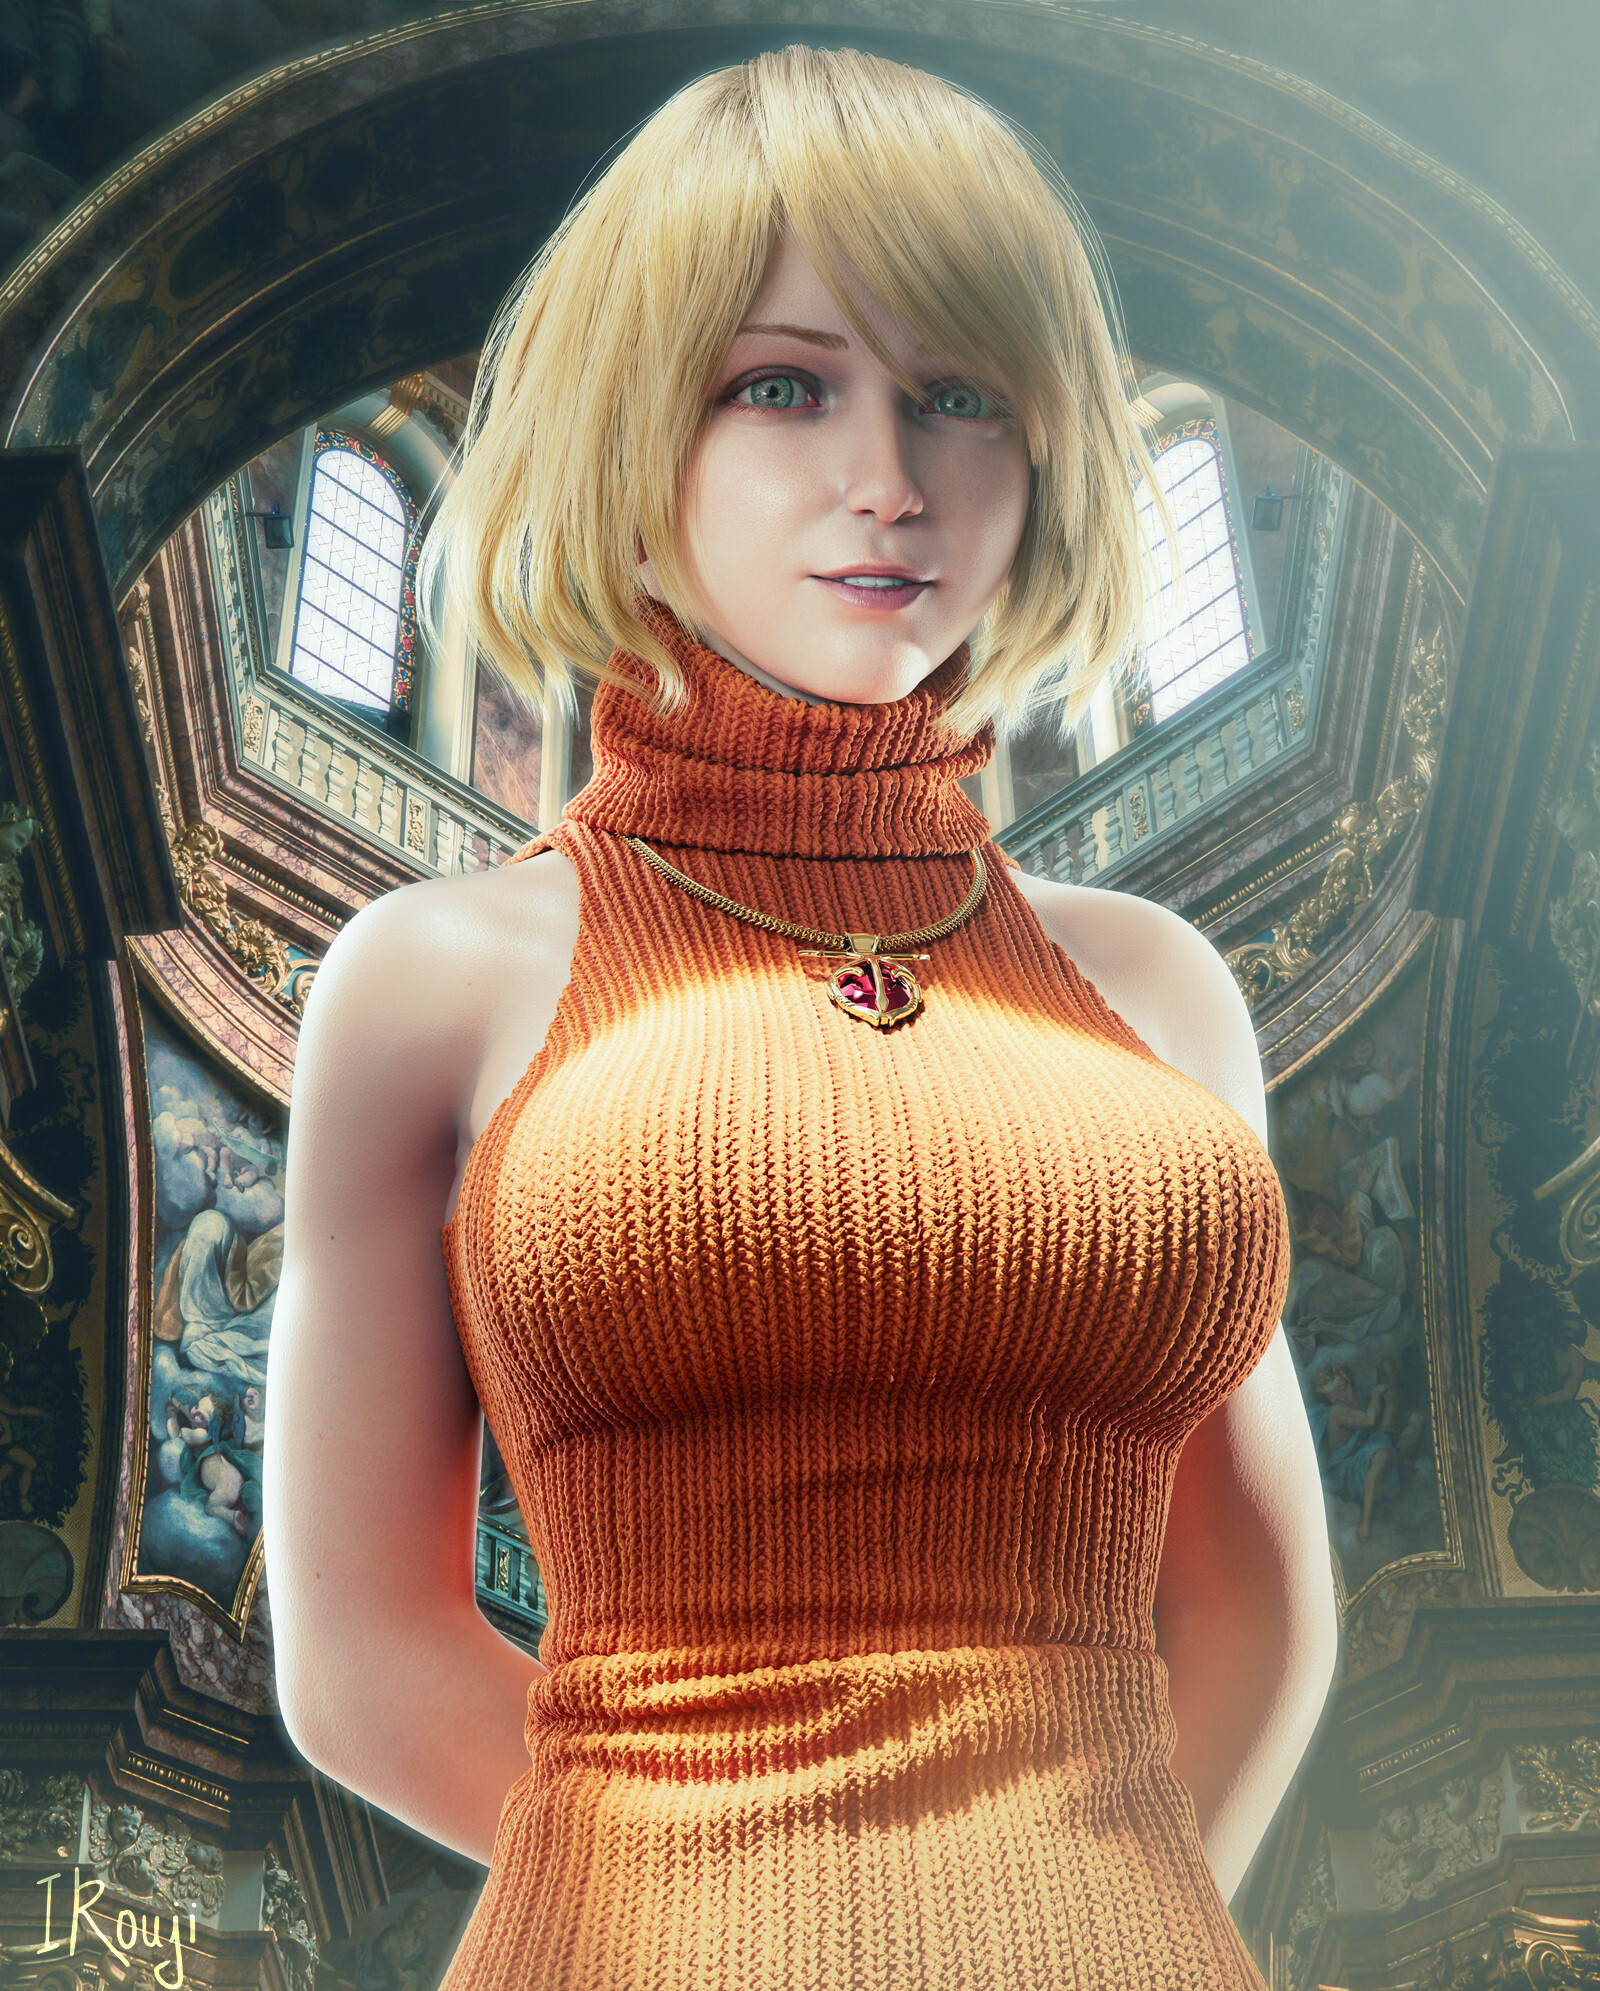 ArtStation - Ashley Graham : Resident Evil 4 Remake (Fan Art)